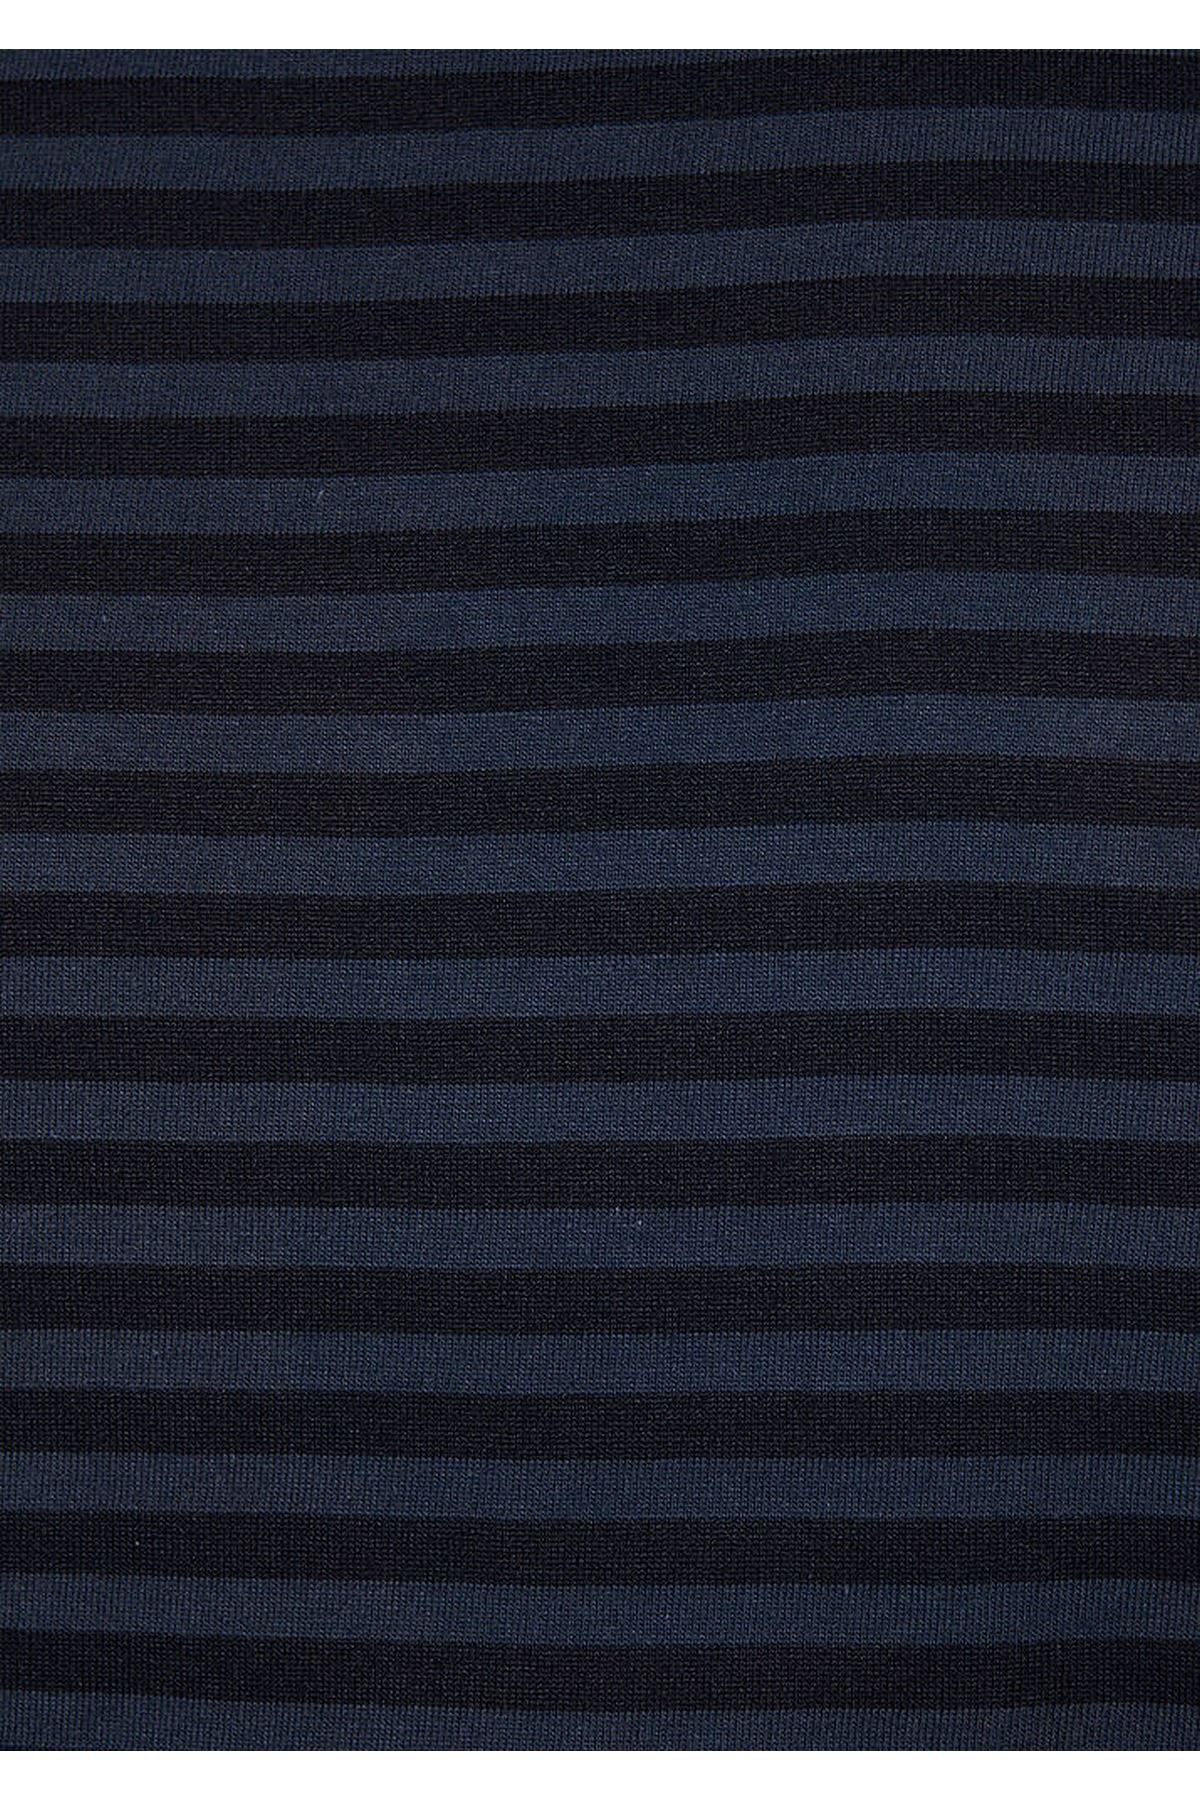 Çizgili Mavi Erkek Lacivert Tişört - M0611168-83699